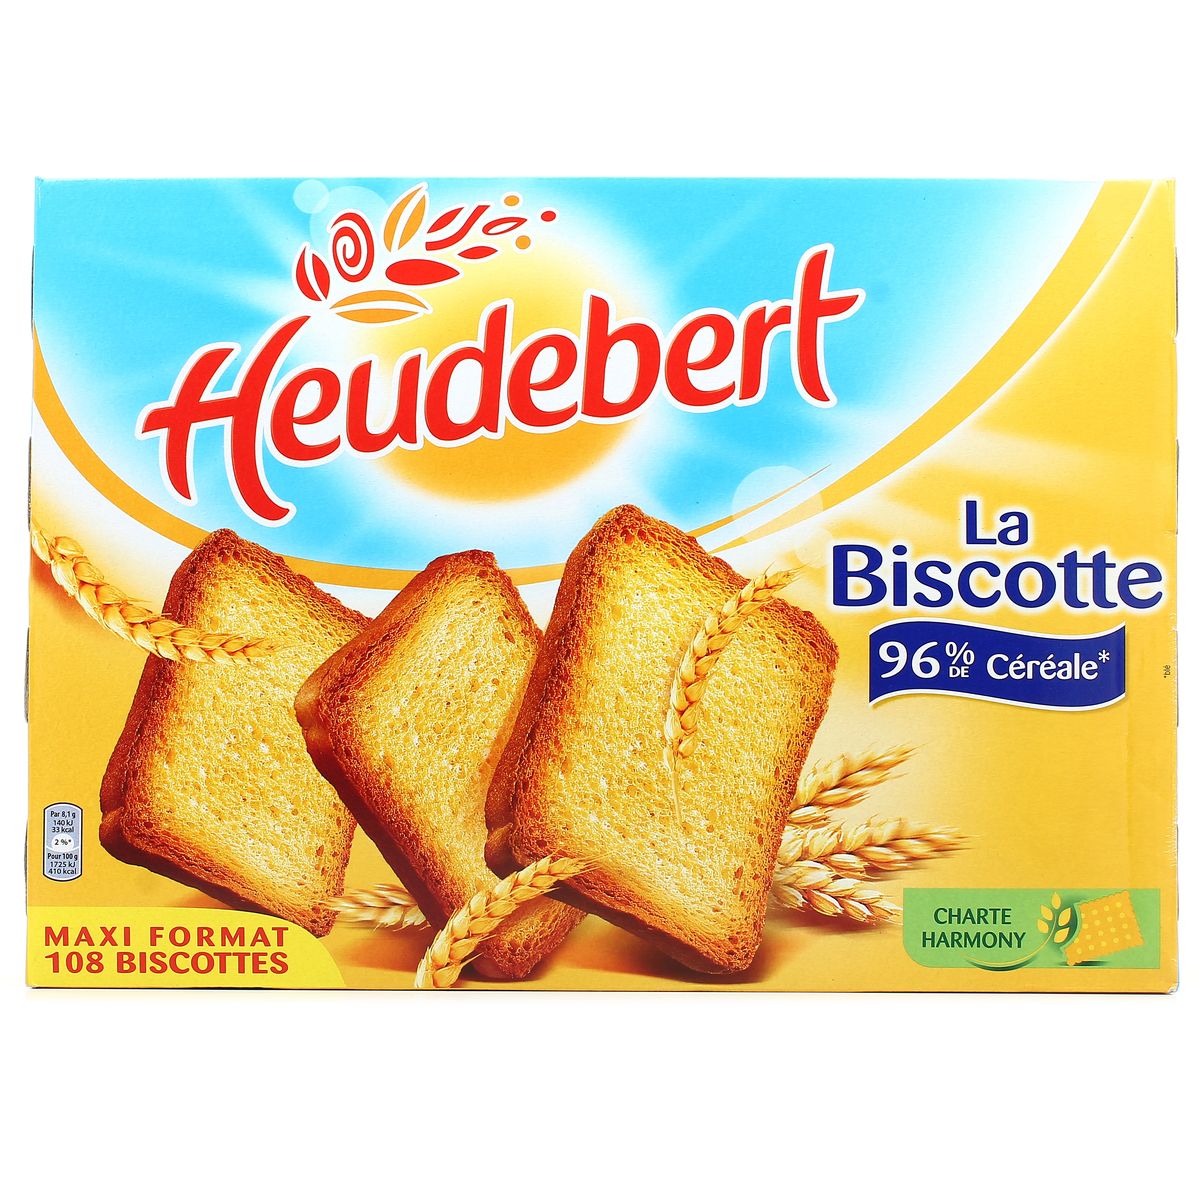 Achat / Vente Heudebert La Biscotte 96% de céréales Maxi Format, 875g